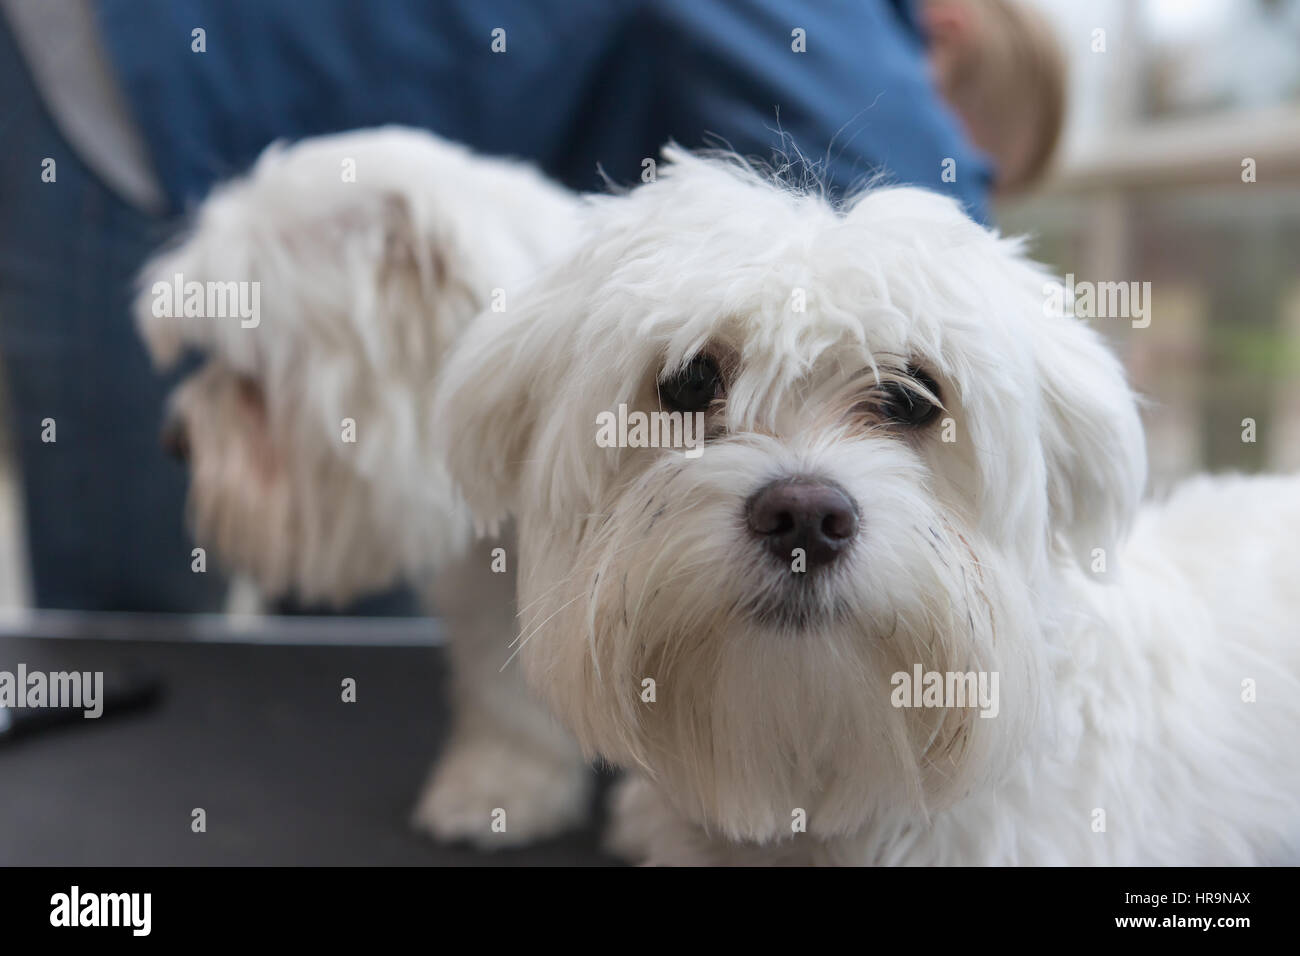 Das Paar weiße Hunde steht auf dem Trimmtisch. Die niedliche Hund im  Vordergrund blickt auf die Kamera Stockfotografie - Alamy